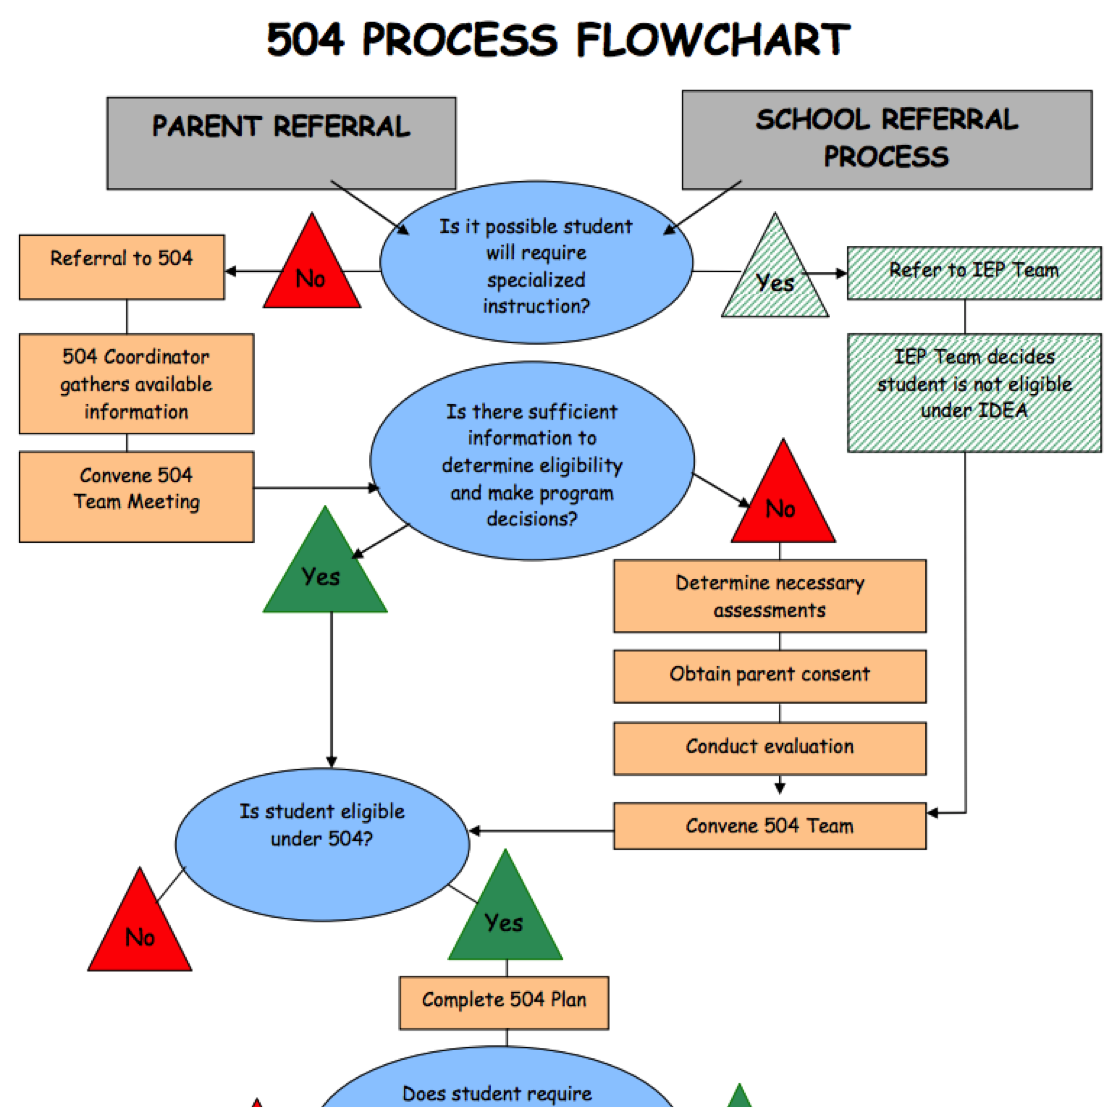 504 Process Flowchart